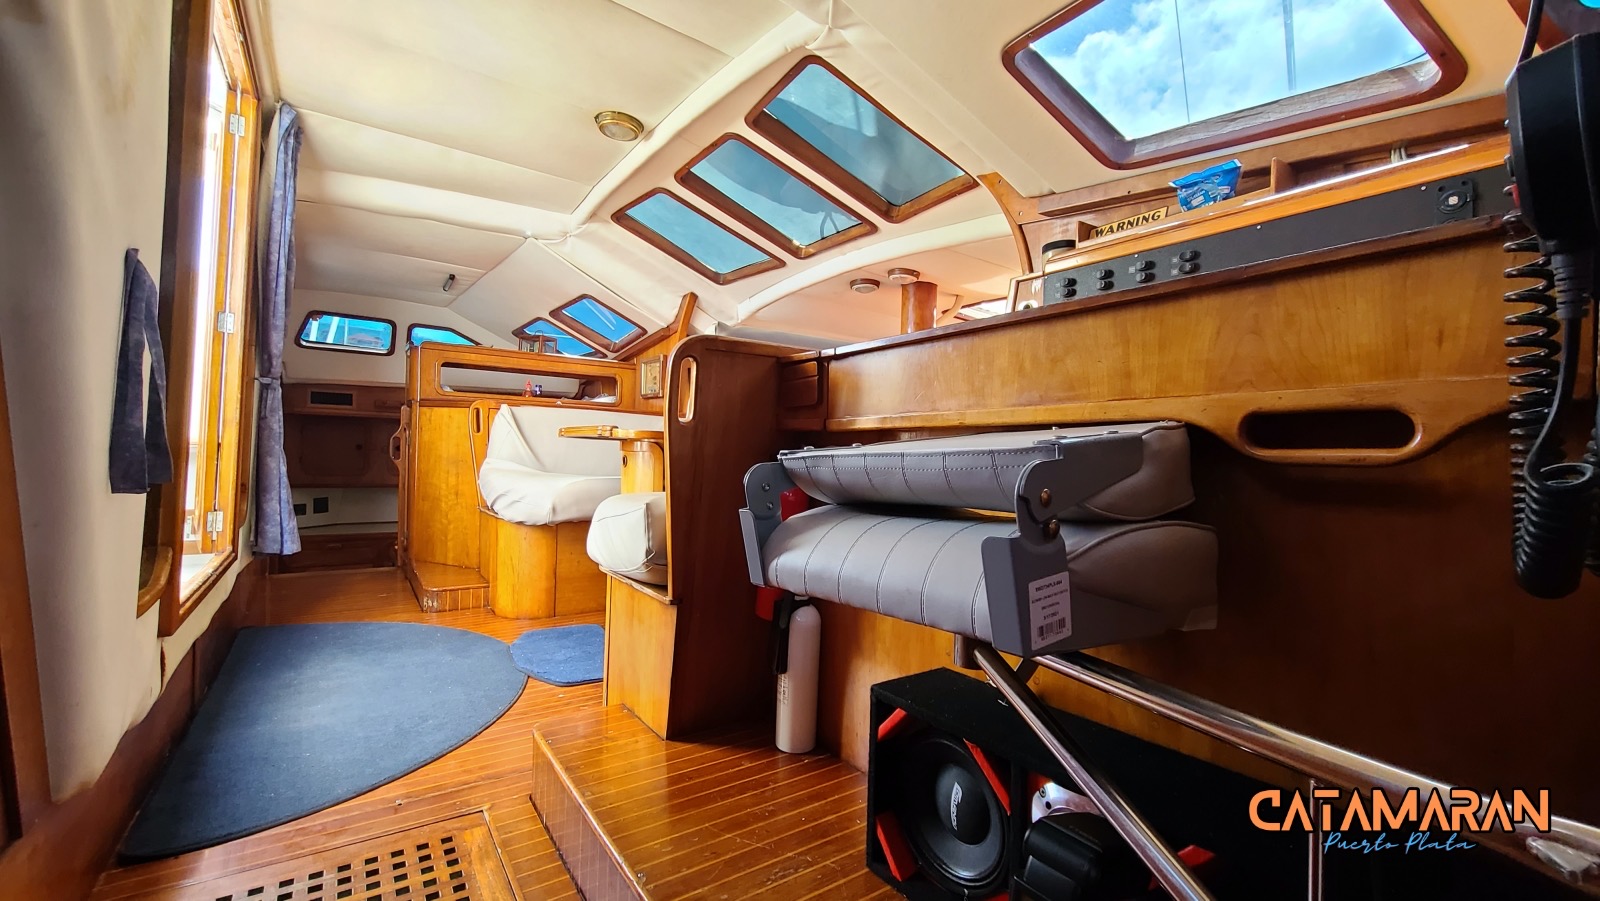 The catamaran interior feels high end